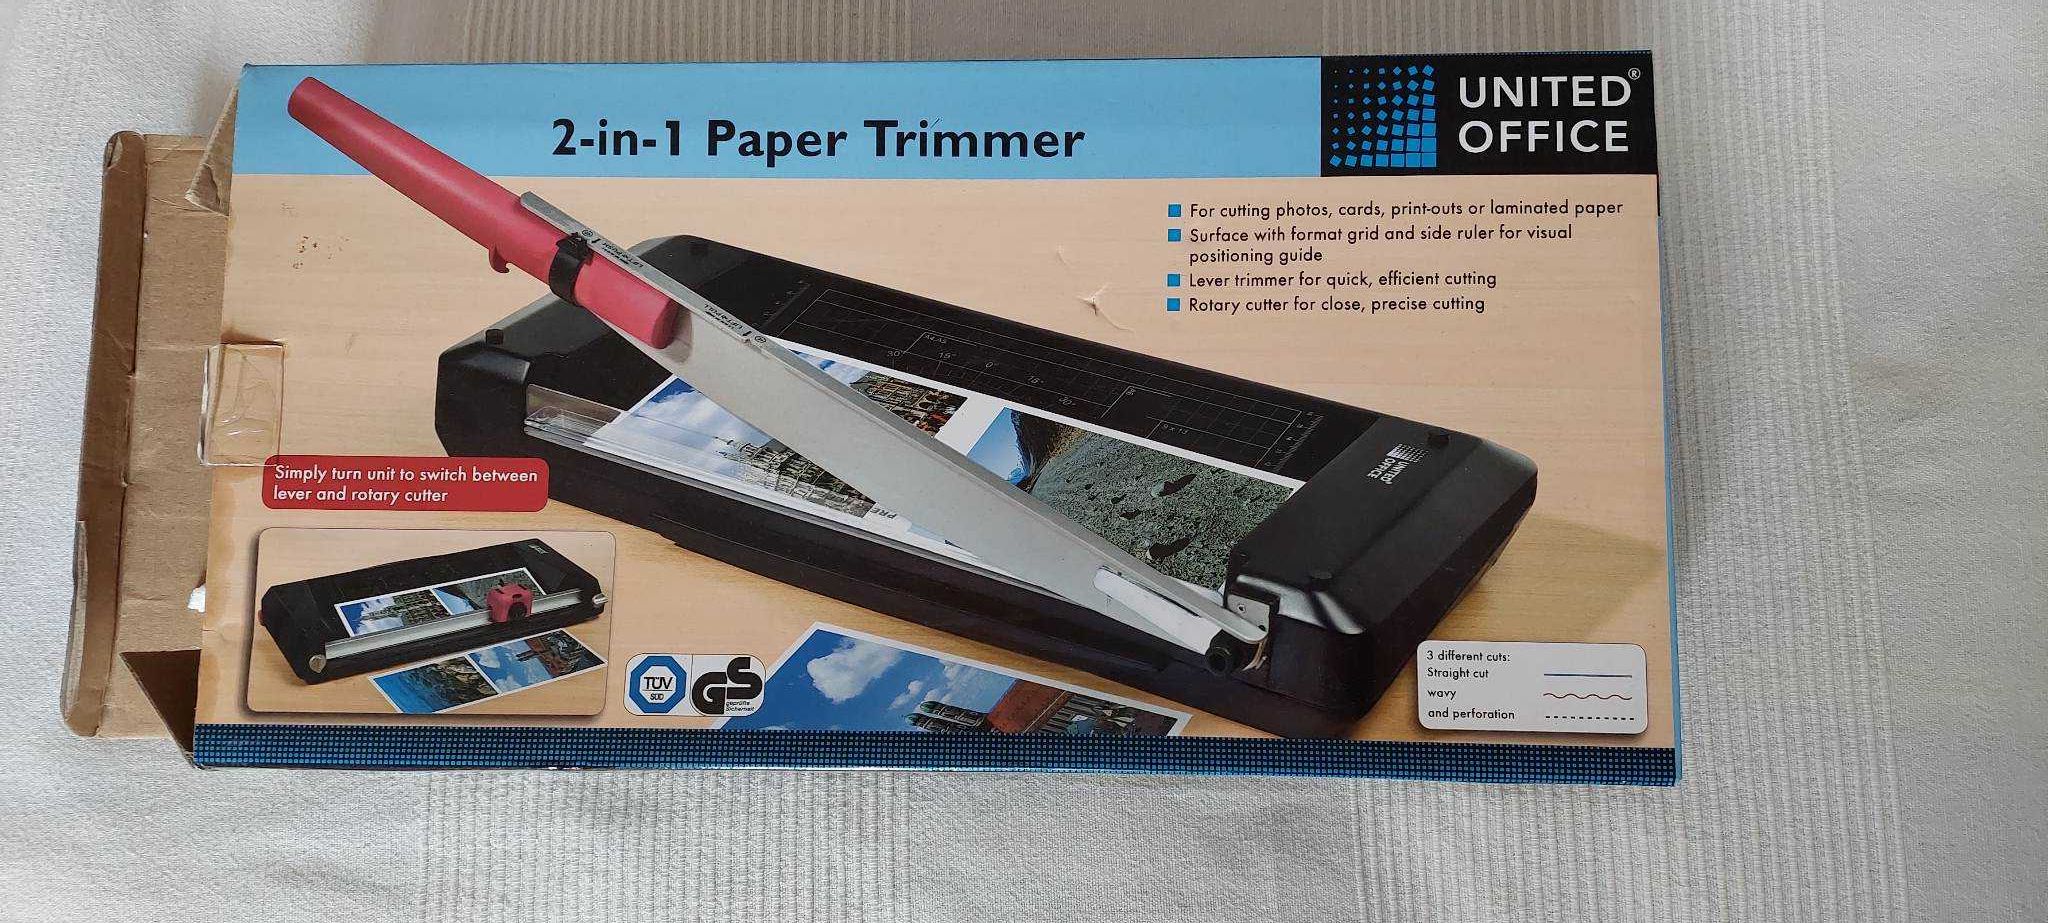 2-in-1 Paper Trimmer do papieru, gilotyna do papieru zdjęć, trimer